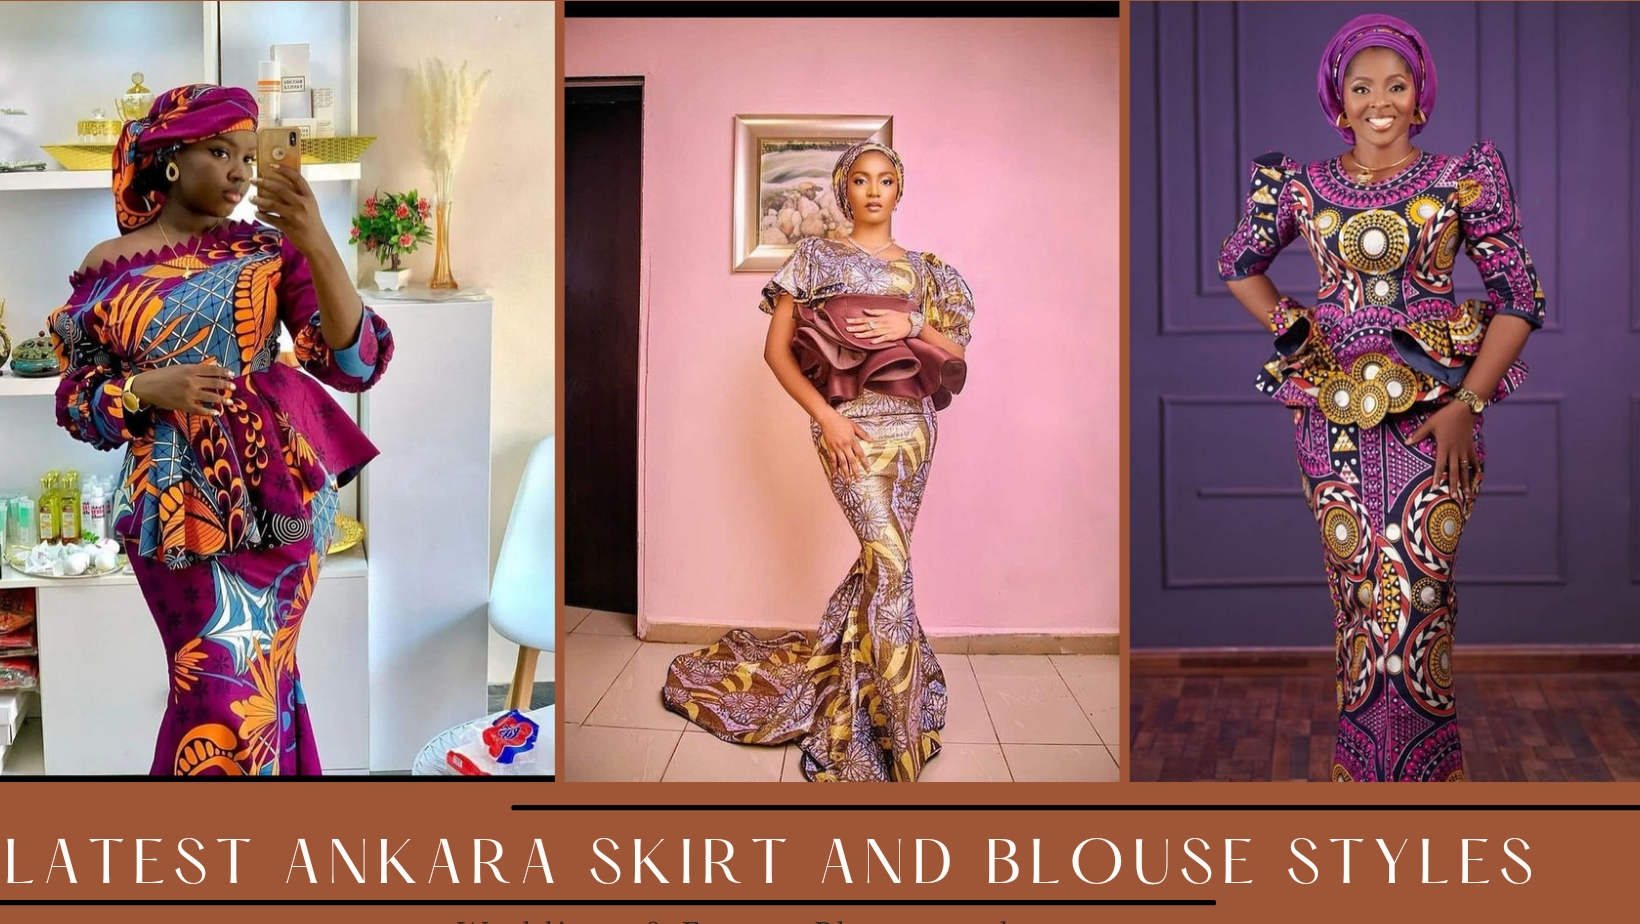 Ankara skirt and blouse